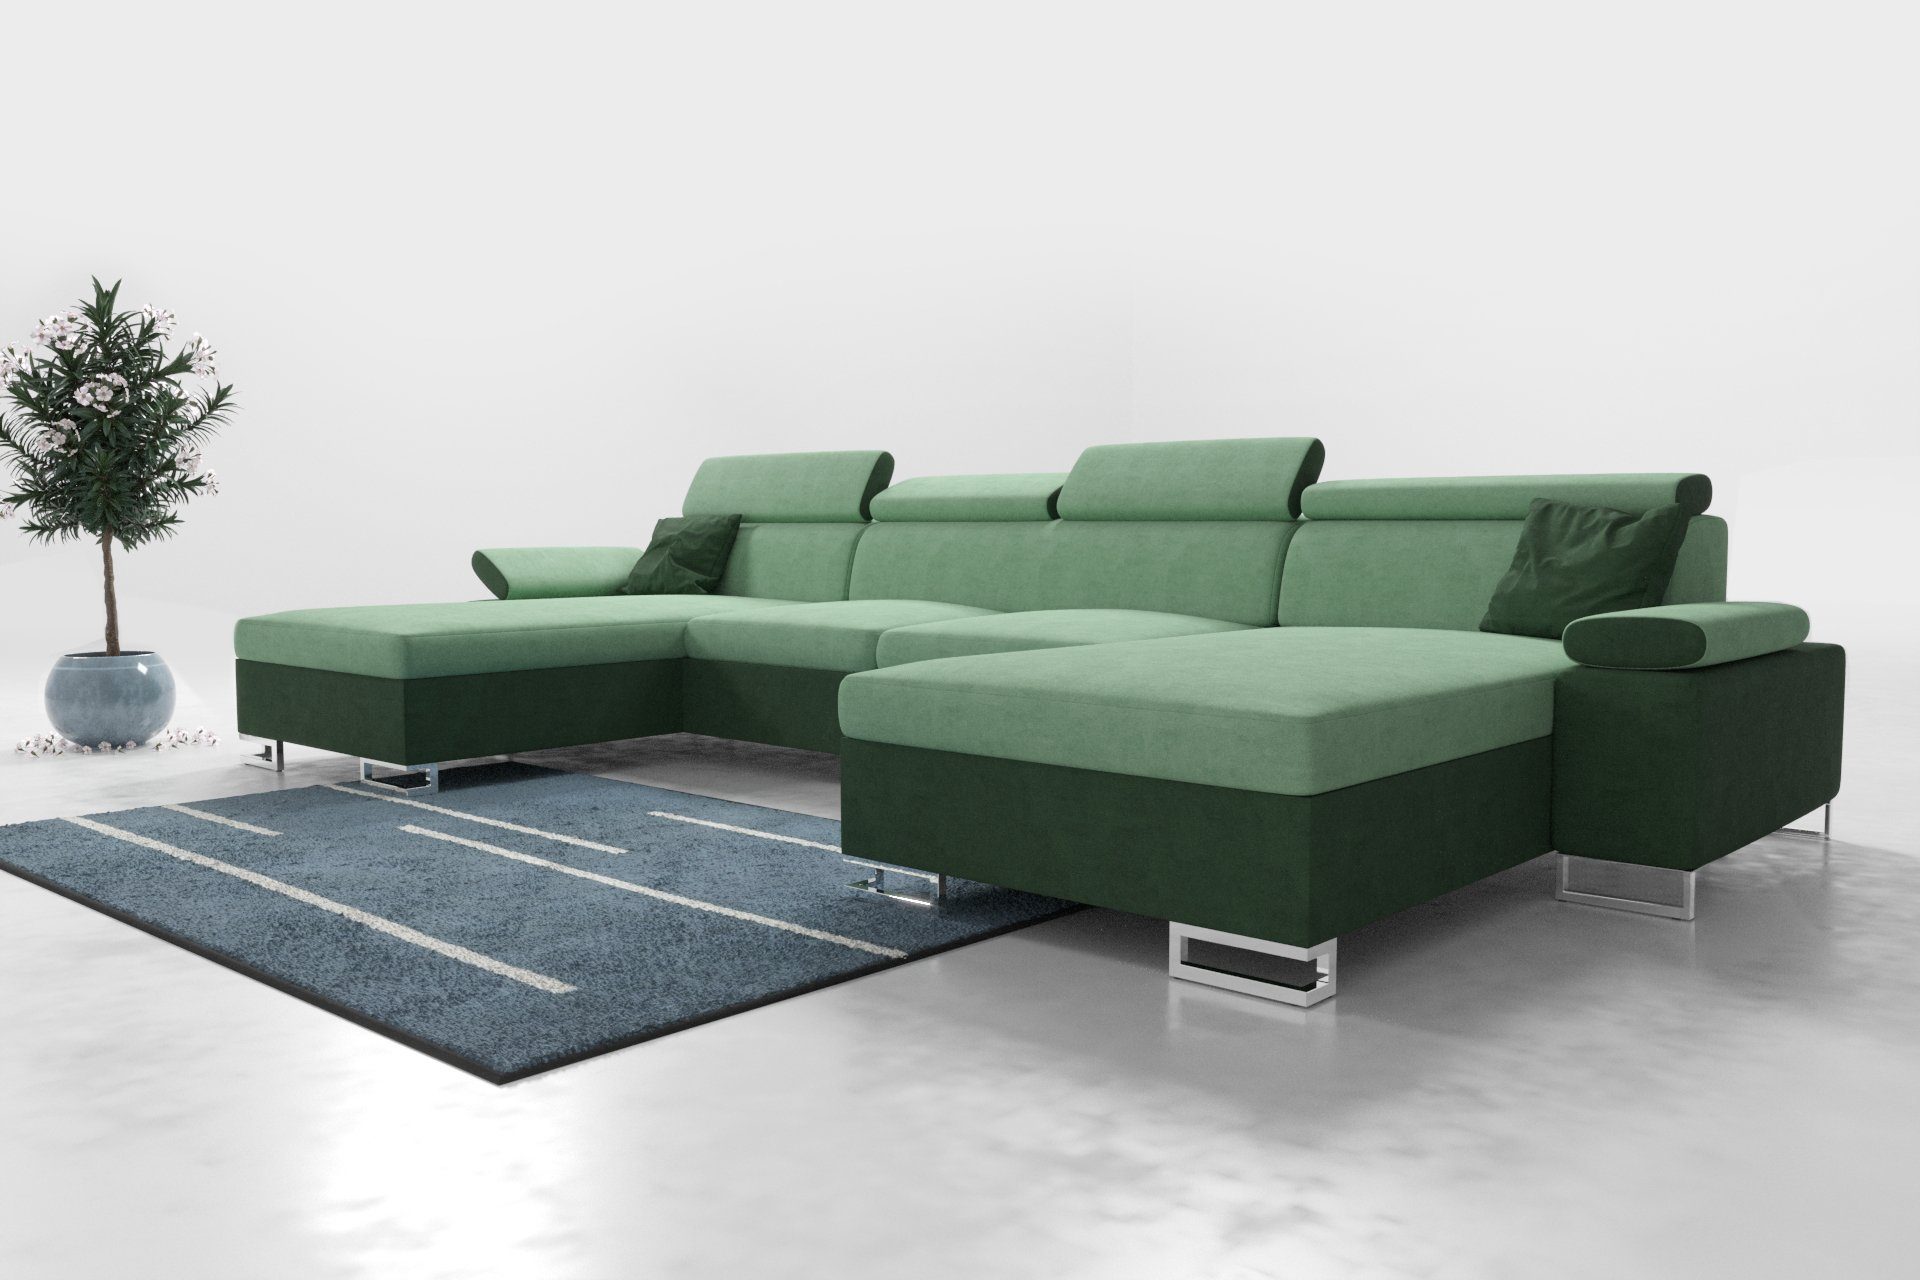 ROYAL24_MARKT Polstergarnitur Moderne Eleganz: Polsterecke Ecksofa 260 CU1, (Premium Couchgarnitur, mit Schlaffunktion und Stauraum), - Integrierter Stauraum - Schlaffunktion - Hochwertige Materialien Grün - Hellgrün